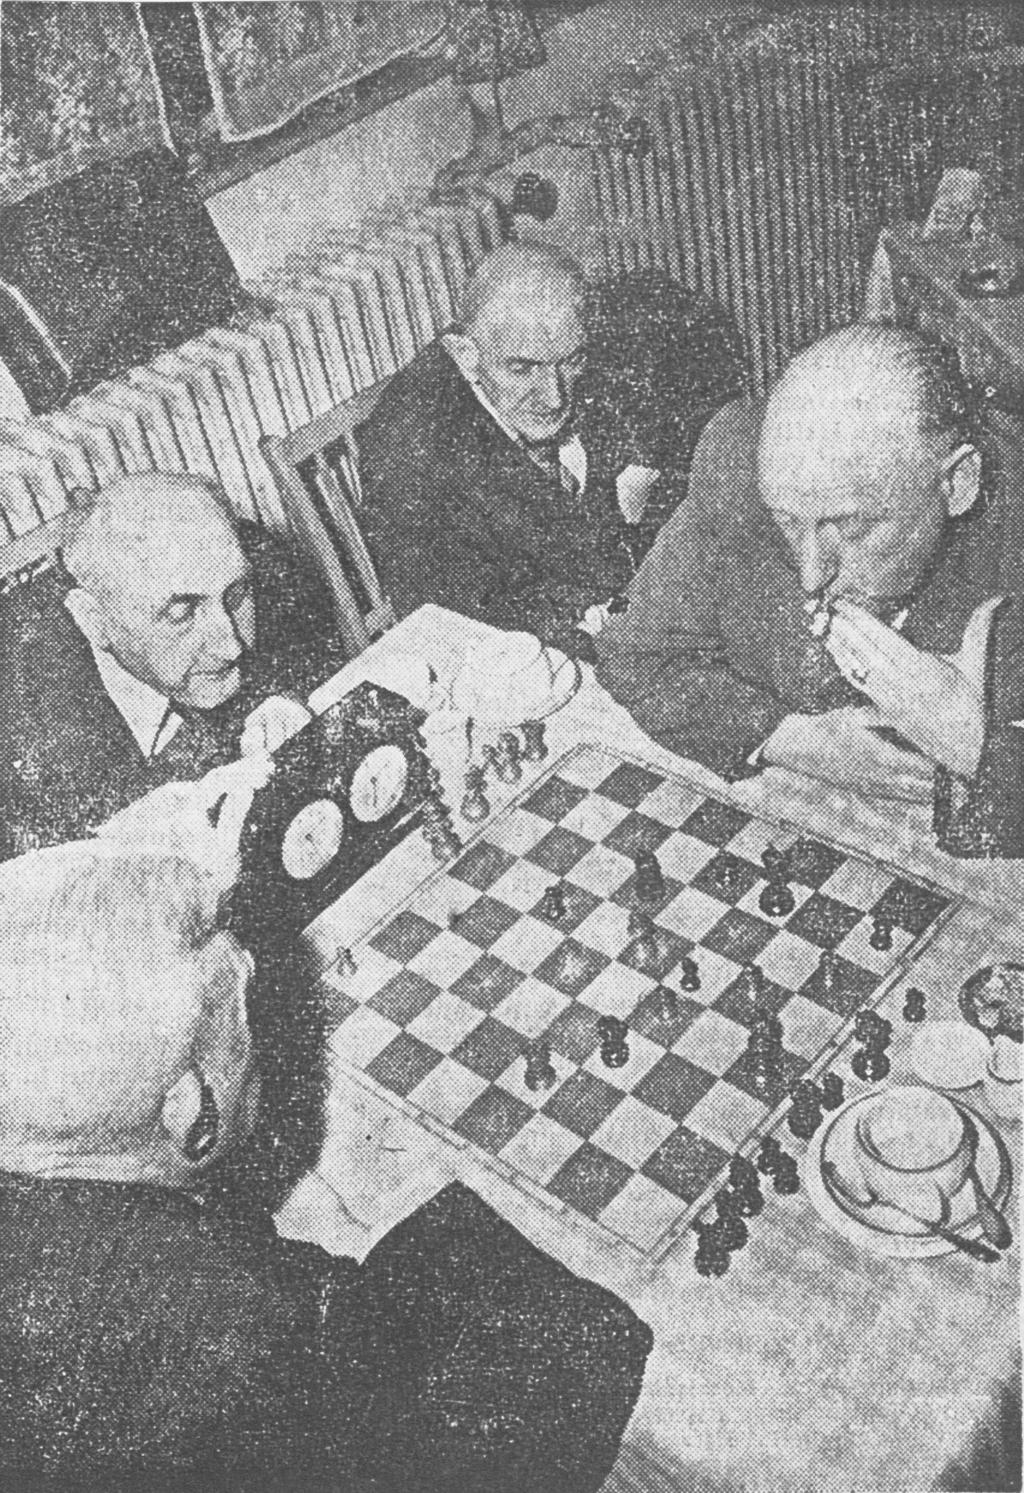 Der Bremer Schachgesellschaft v. 1877 (BSG) ist der Fotograf kein Unbekannter. Zu ihrem 75-jährigen Jubiläum hatte sie ihn 1952 zu Gruppenaufnahmen eingeladen. Am 26.